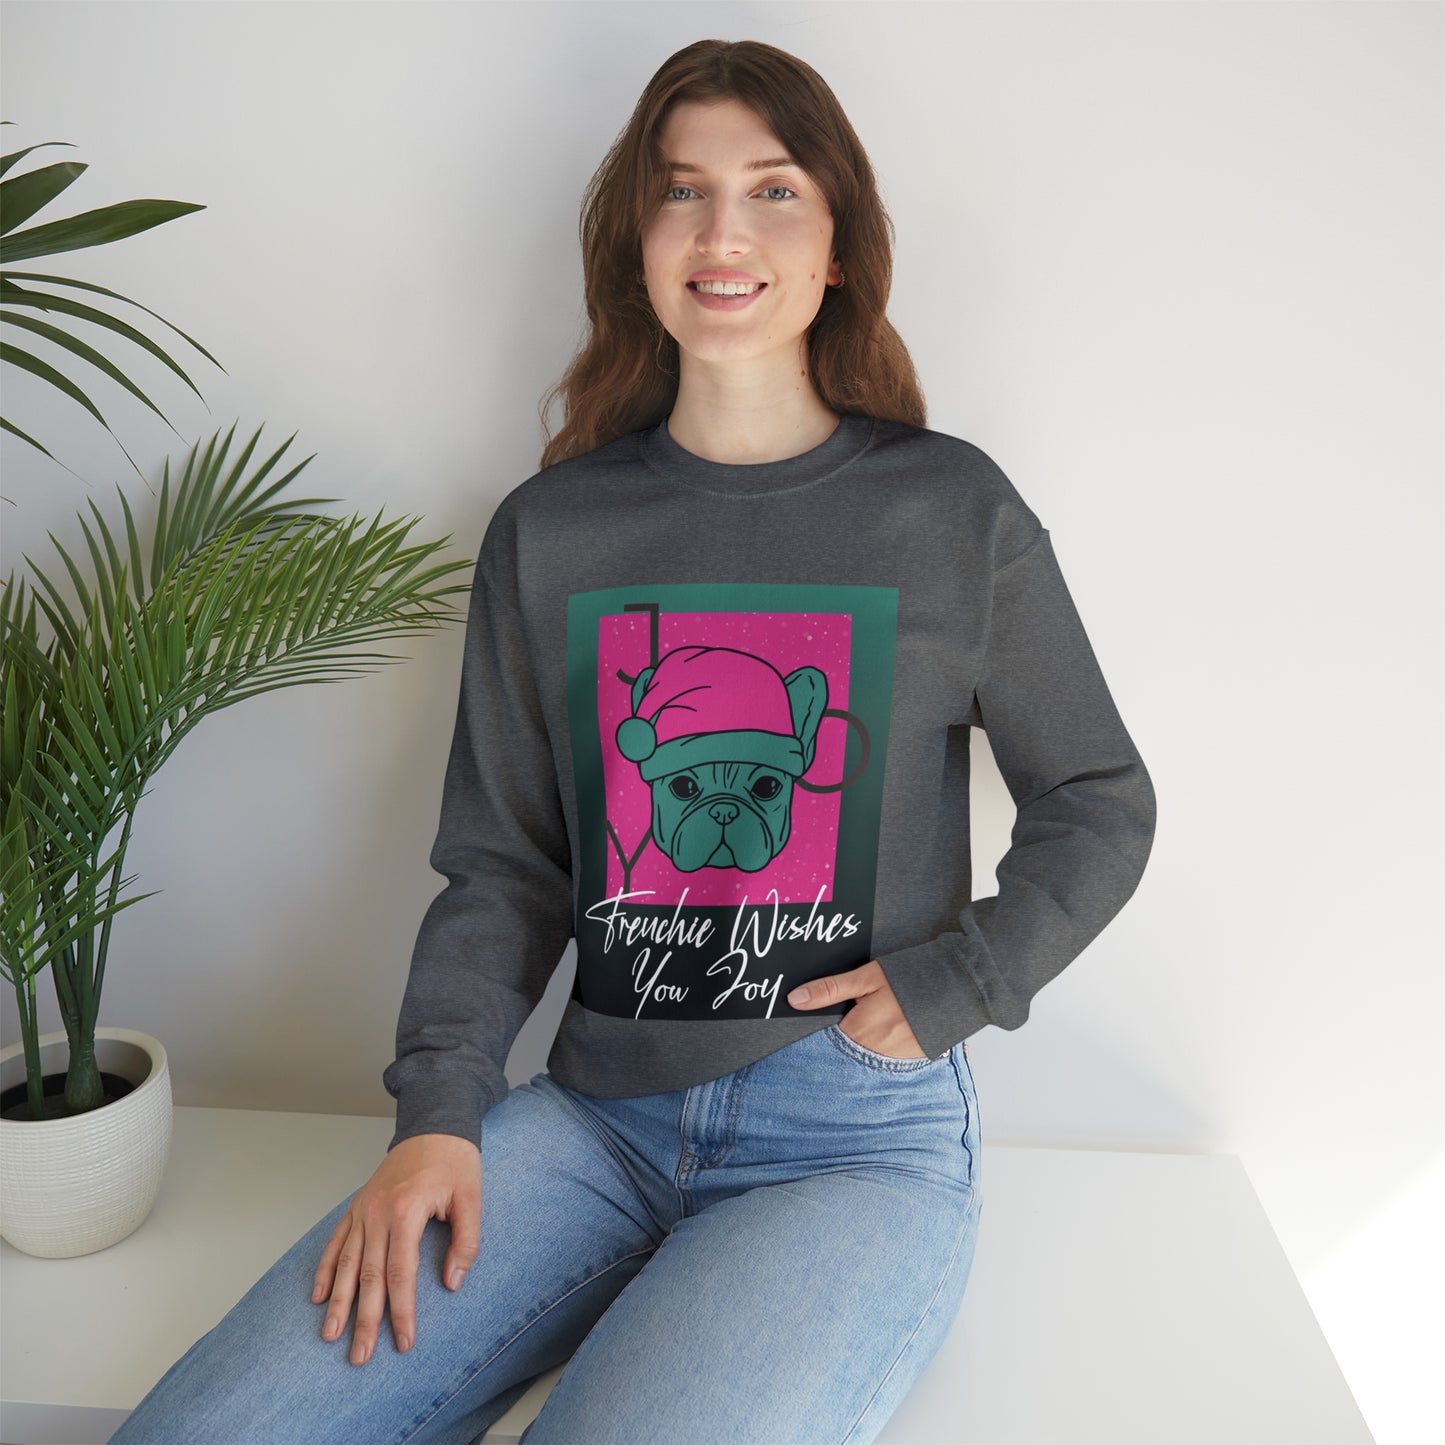 Frenchie Wish Sweater - Unisex Sweatshirt